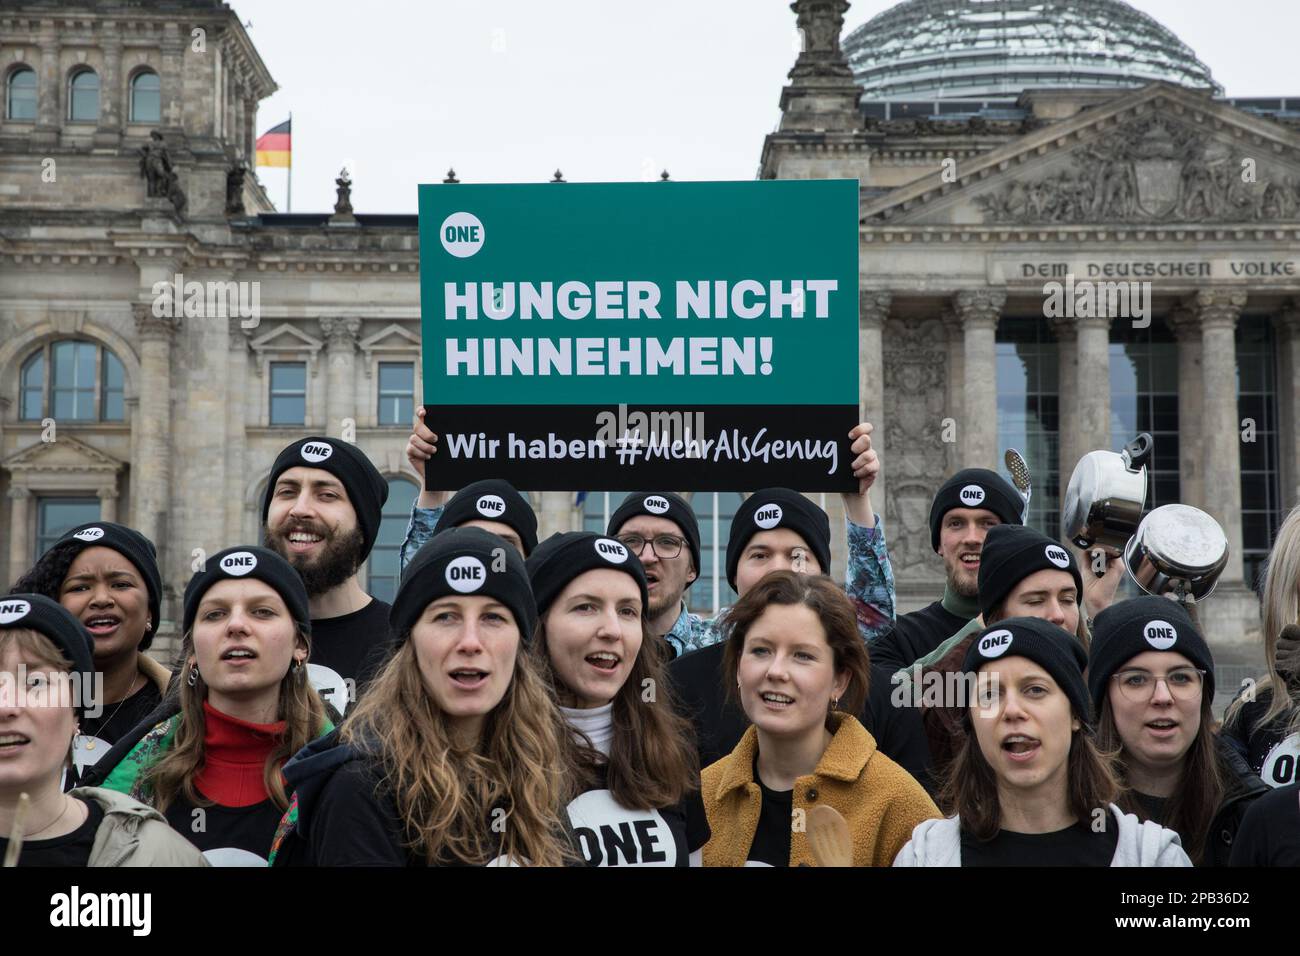 12. März 2023, Berlin, Deutschland: Am 12. März 2023 protestierte eine Gruppe junger Menschen vor dem Reichstag in Berlin, um darauf aufmerksam zu machen, dass weltweit noch 828 Millionen Menschen Hunger leiden. Sie trommelten auf Töpfen und hielten Schilder mit dem Slogan „laut gegen Hunger“. Die ONE Campaign, auch BEKANNT als ONE, ist eine internationale, nicht-parteiische, gemeinnützige Organisation, die sich für die Bekämpfung extremer Armut und vermeidbarer Krankheiten, insbesondere in Afrika, einsetzt, indem sie die Öffentlichkeit sensibilisiert und politische Führer unter Druck setzt, Strategien und Programme zu unterstützen, die sav unterstützen Stockfoto